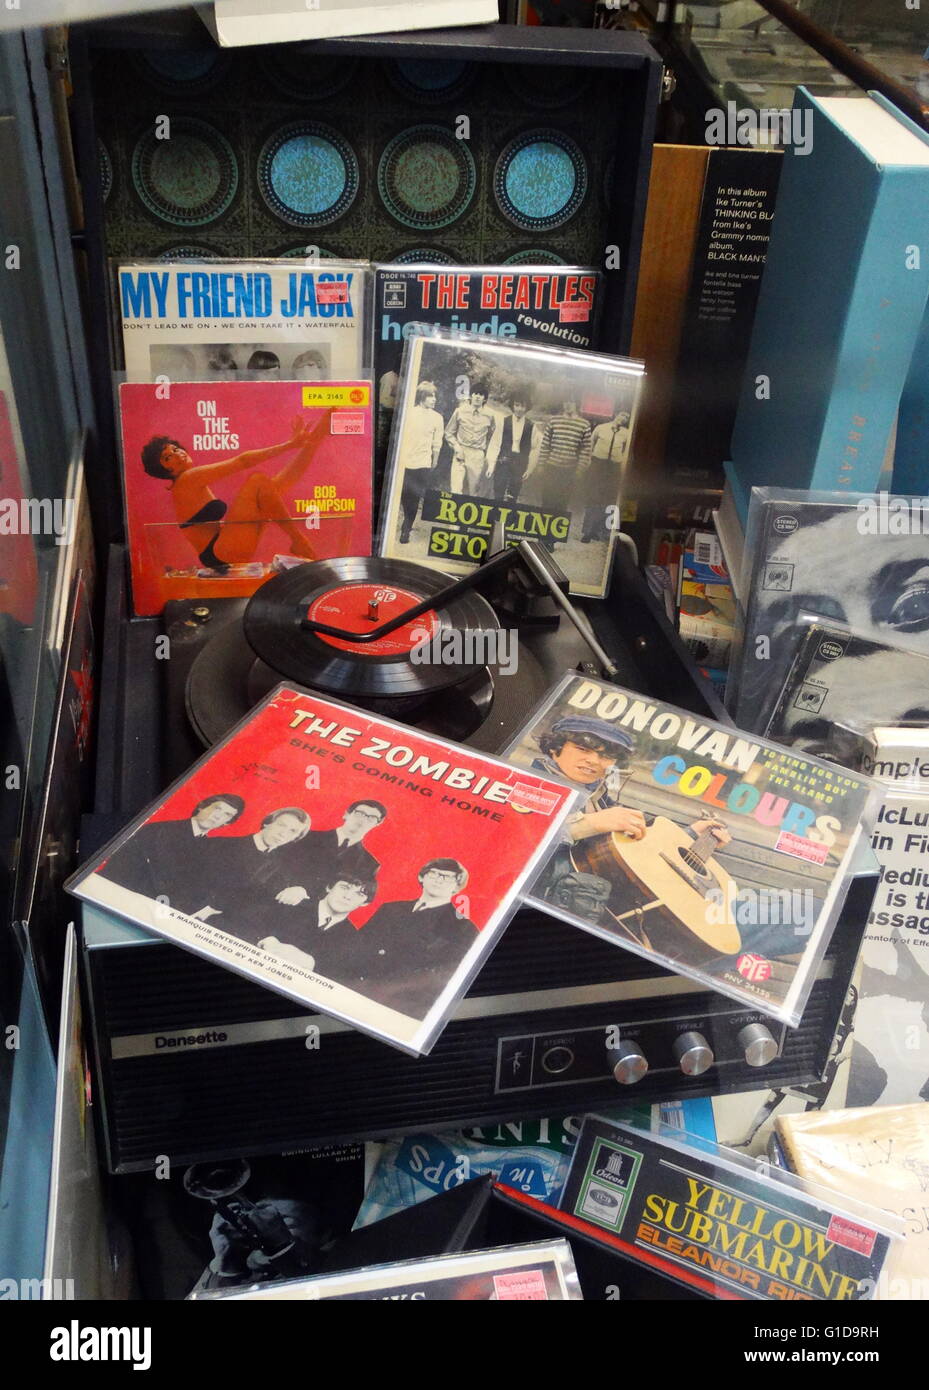 Dansette record player vers 1968 avec les disques vinyles dans les manchons de la musique pop des années 60 ; l'oreille ; Donovan Beatles et Rolling Stones records peut être vu Banque D'Images